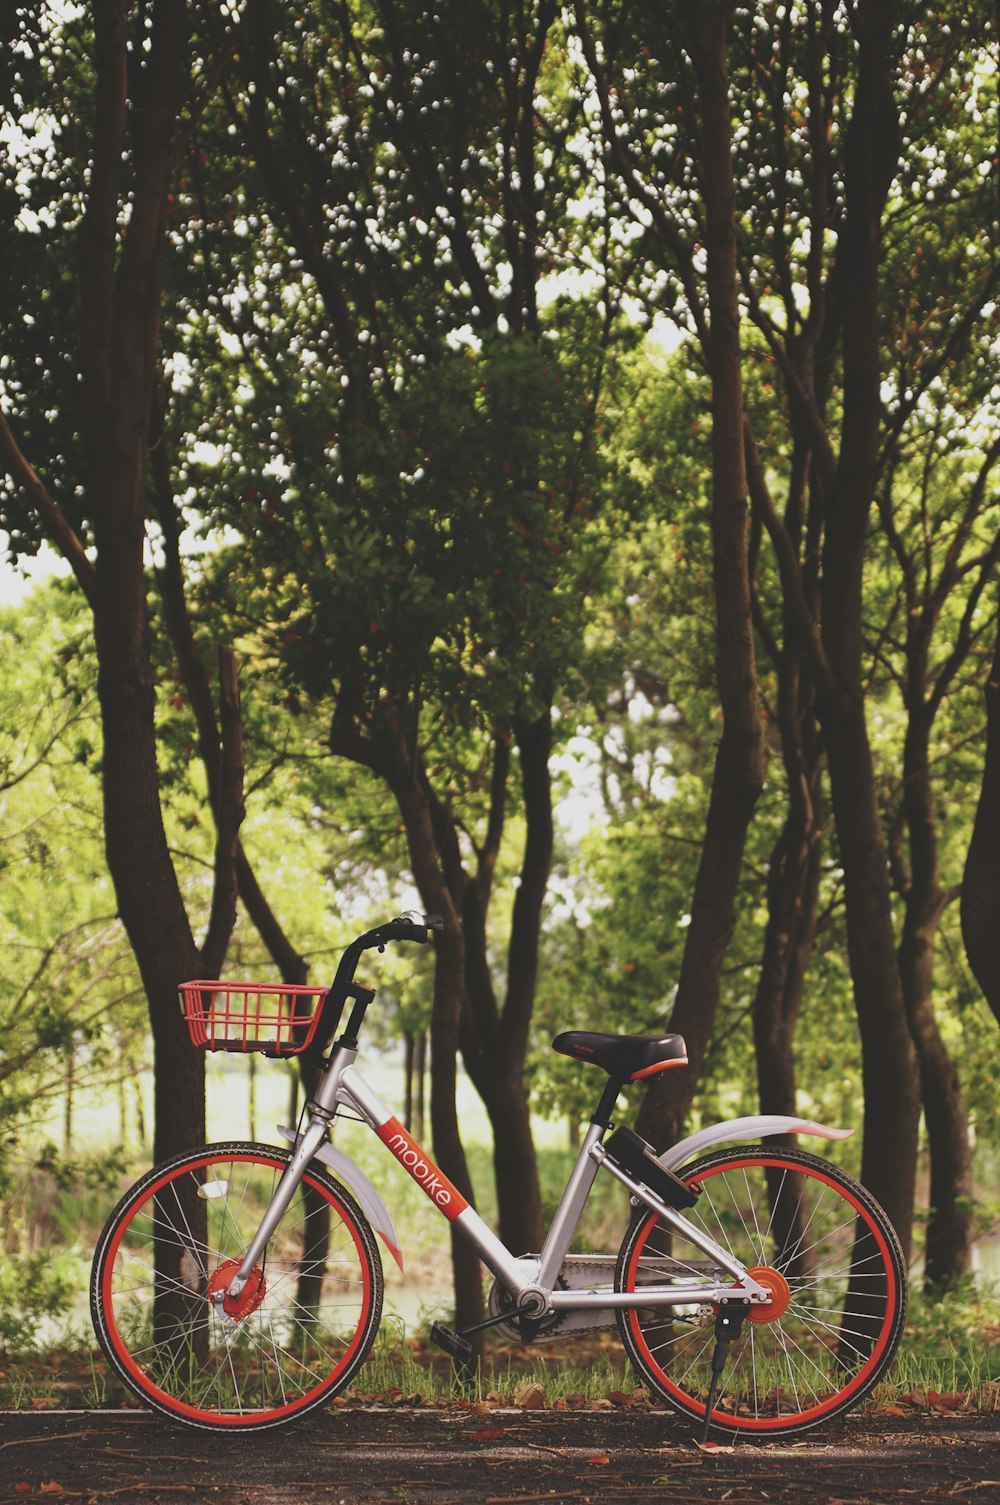 fotografia de bicicleta estacionada perto de árvores